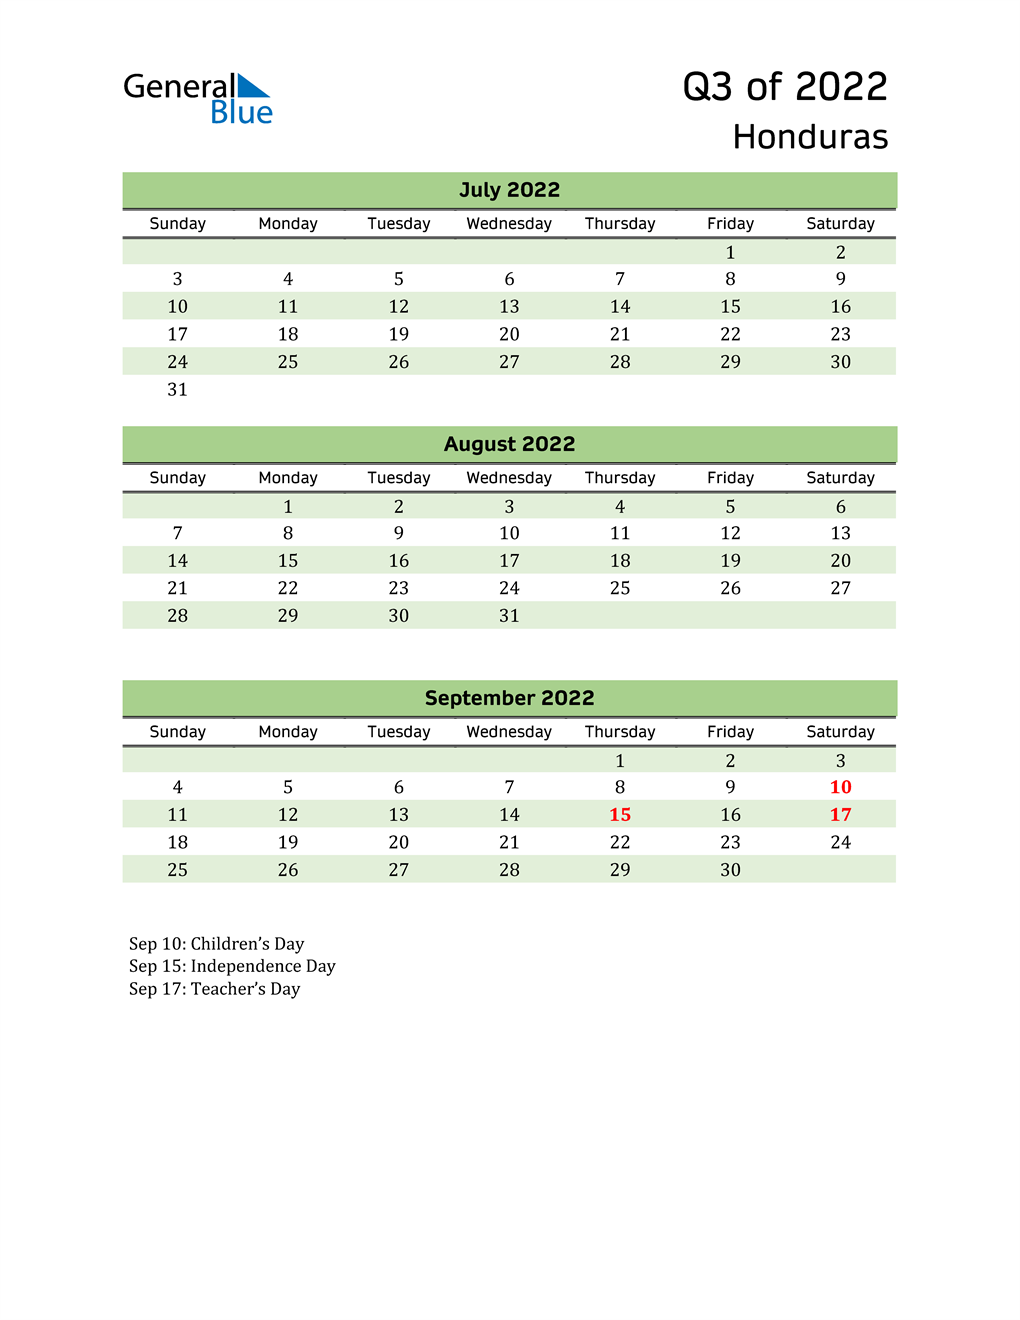  Quarterly Calendar 2022 with Honduras Holidays 